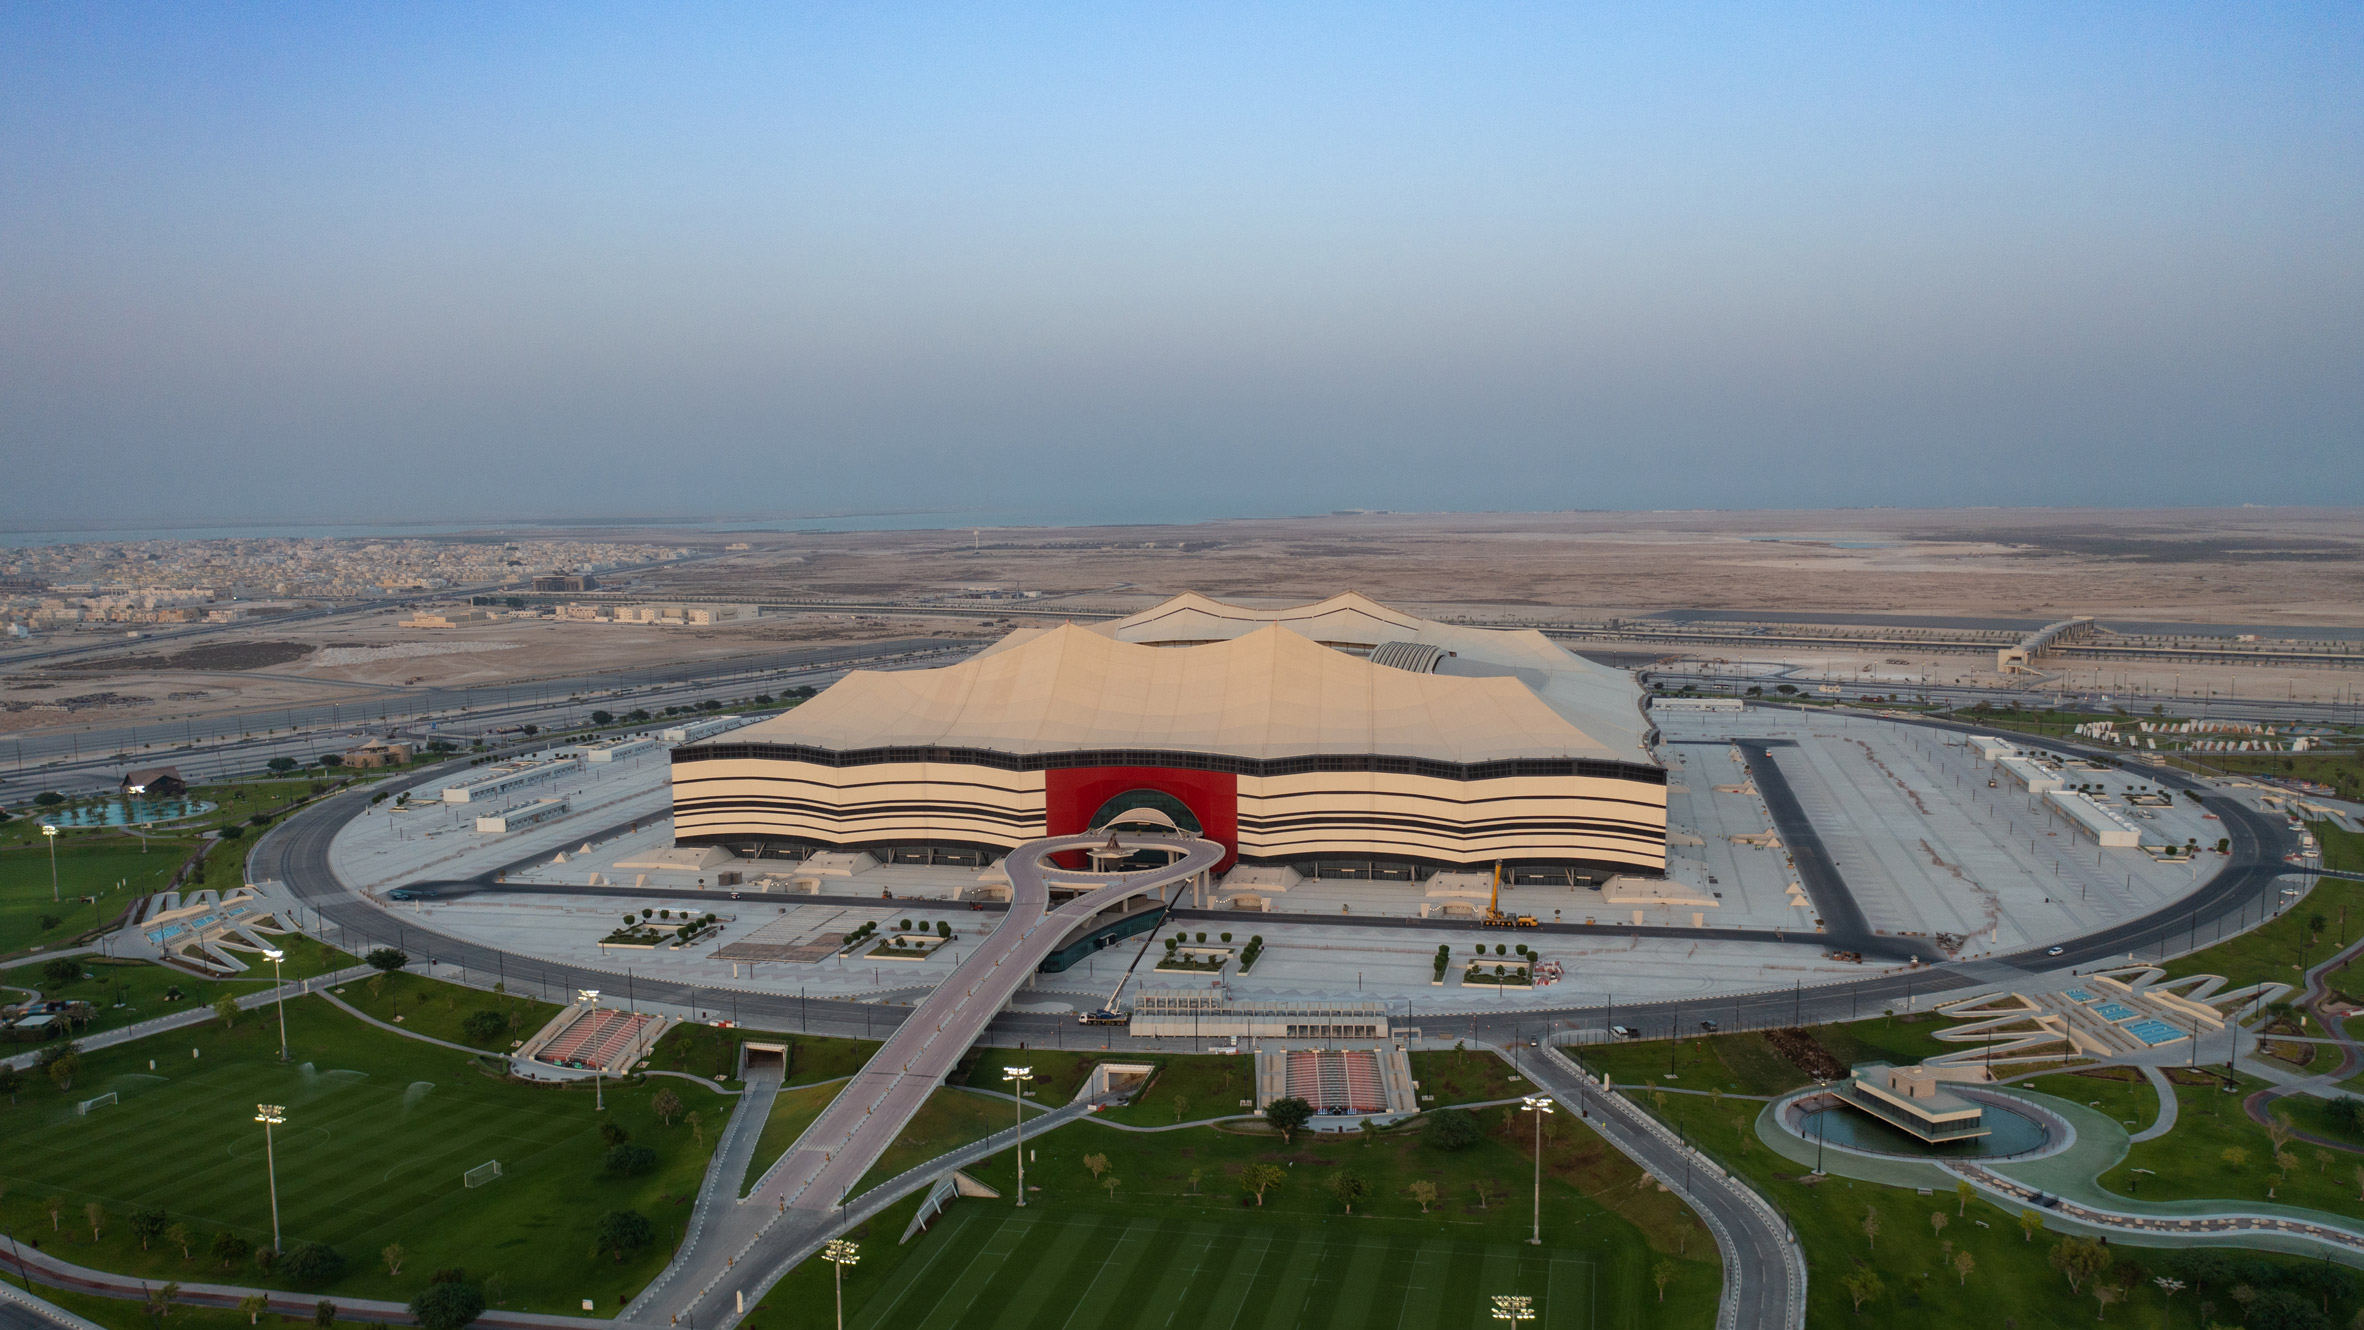 Al Bayt Stadium for Qatar World Cup